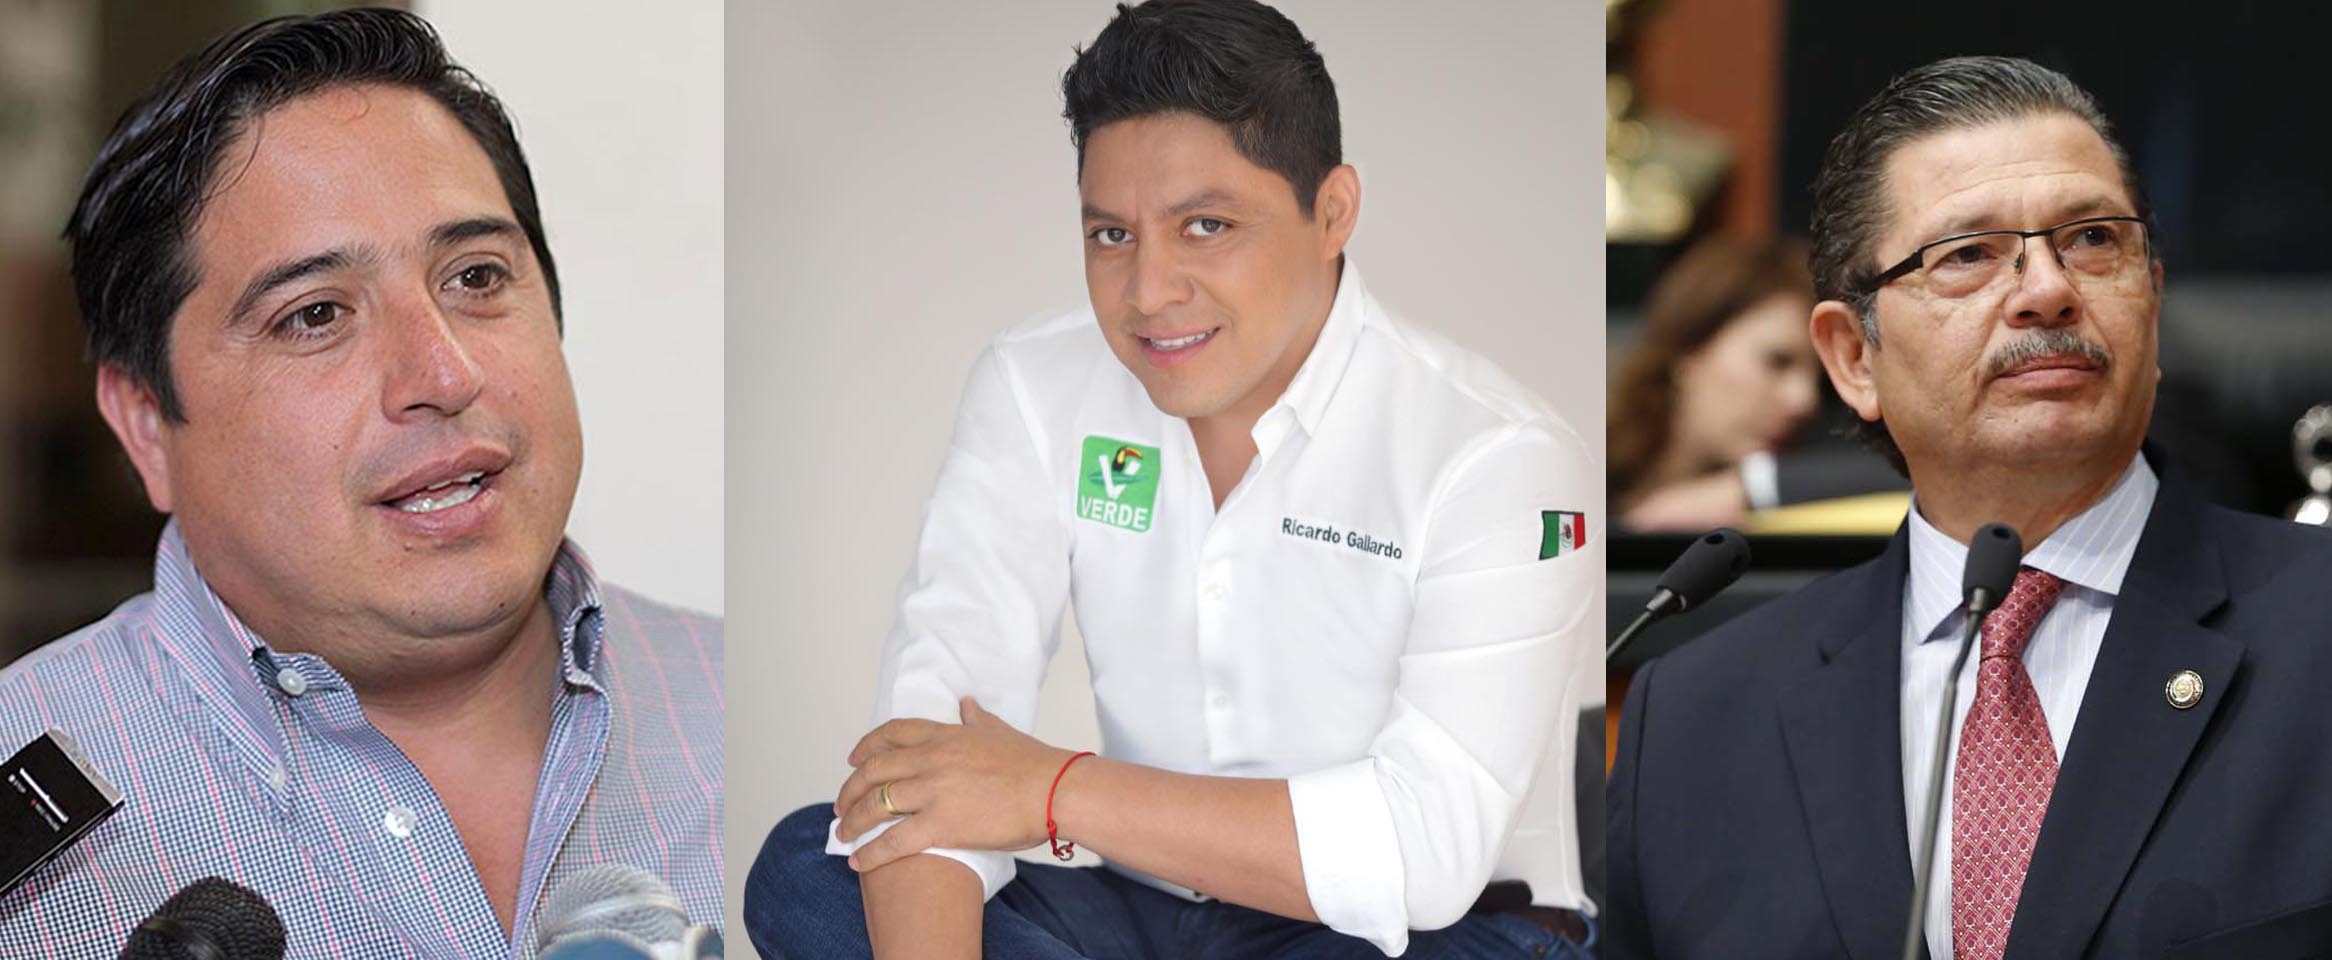  Gallardo, Pedroza y ‘Tecmol’ serán denunciados por la UIF: Milenio